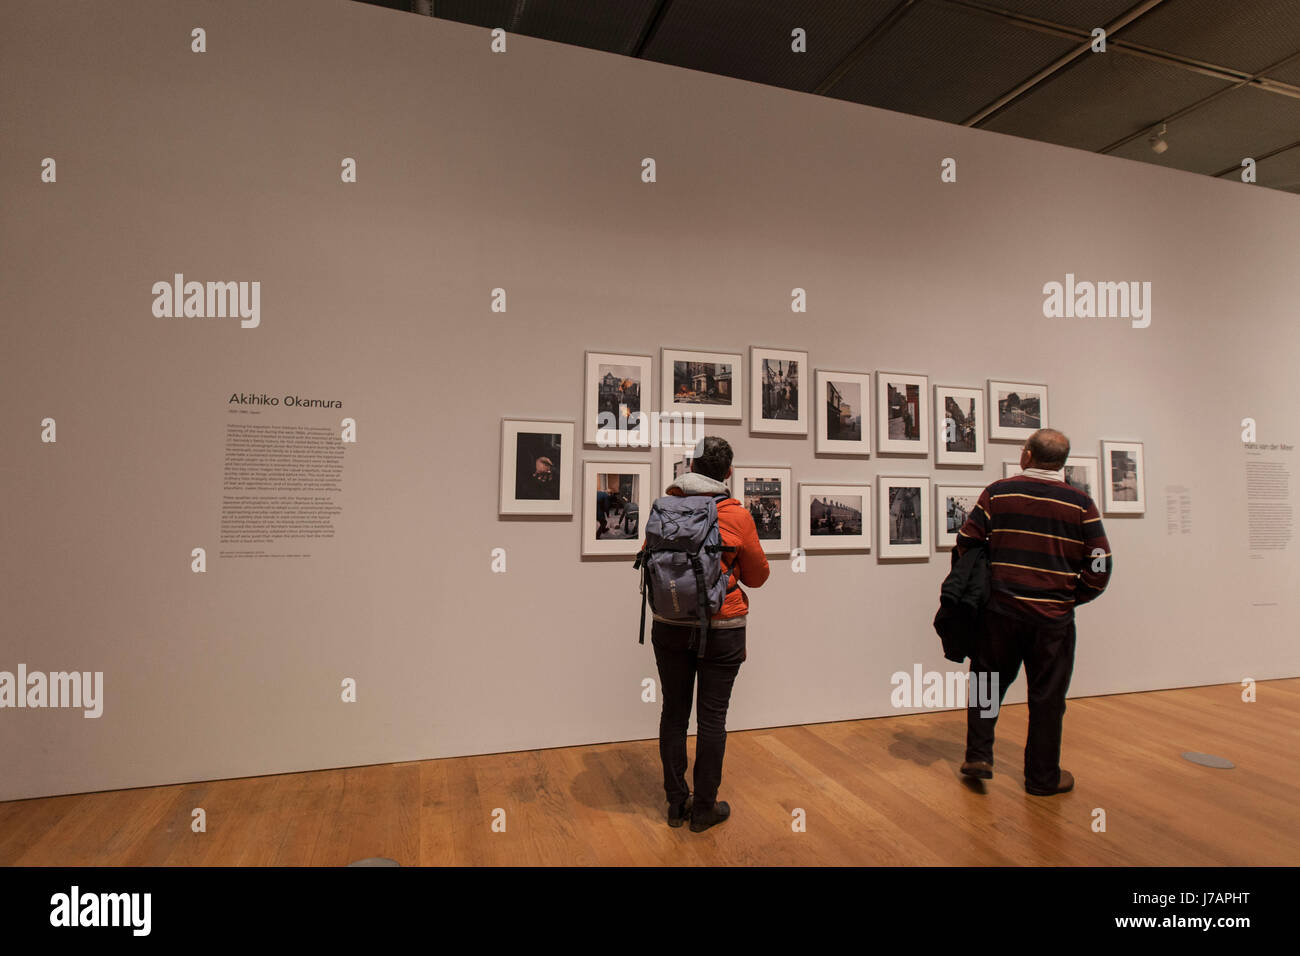 Galerie und Besucher dieser Seite von einer Ausstellung Stockfoto